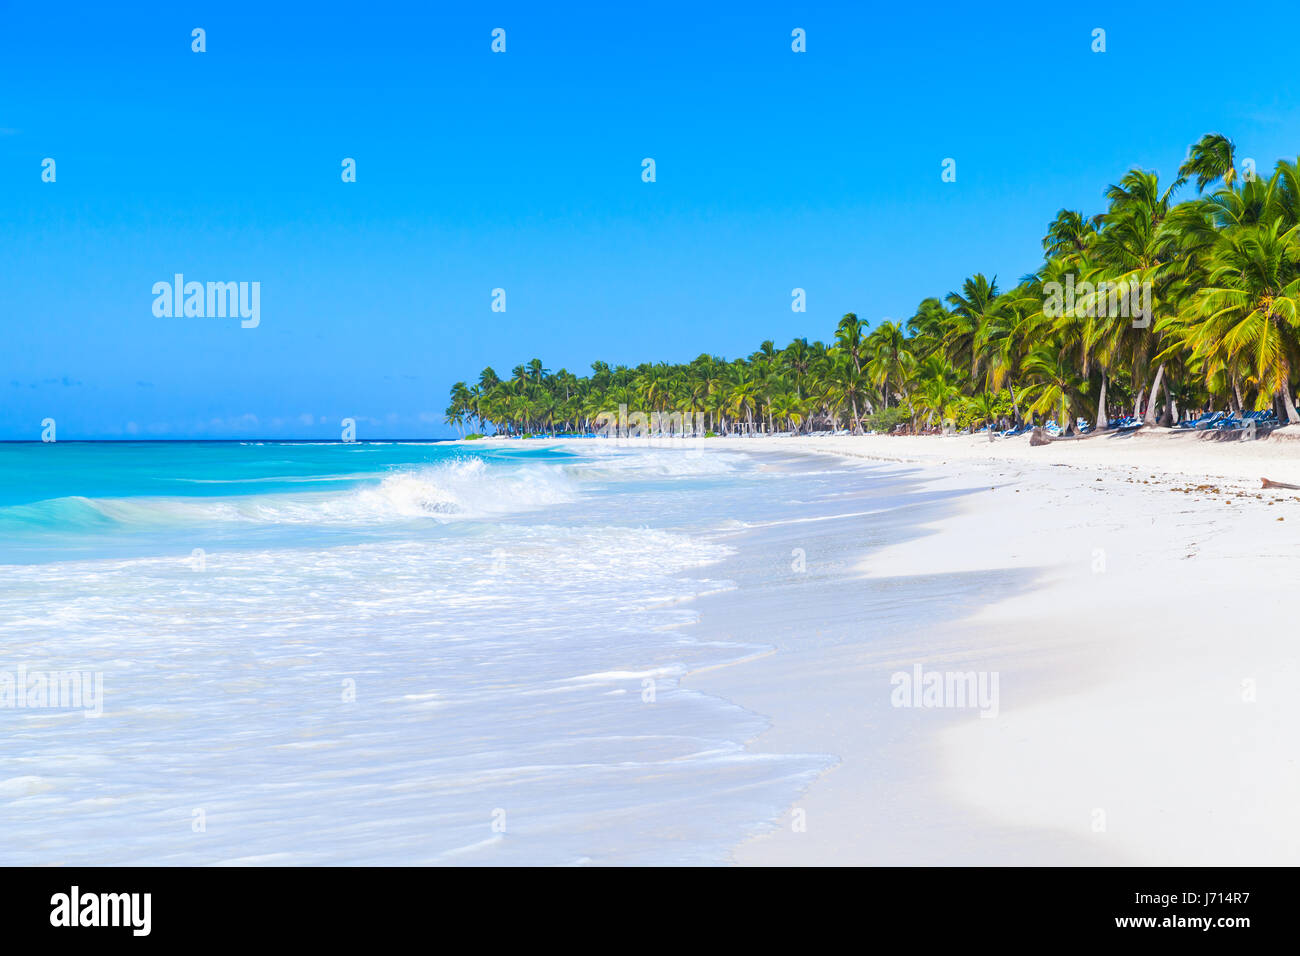 Las palmas de coco crecen en la playa de arena blanca. Mar Caribe, República Dominicana, Costa de la isla Saona, el popular complejo turístico, natural foto Foto de stock